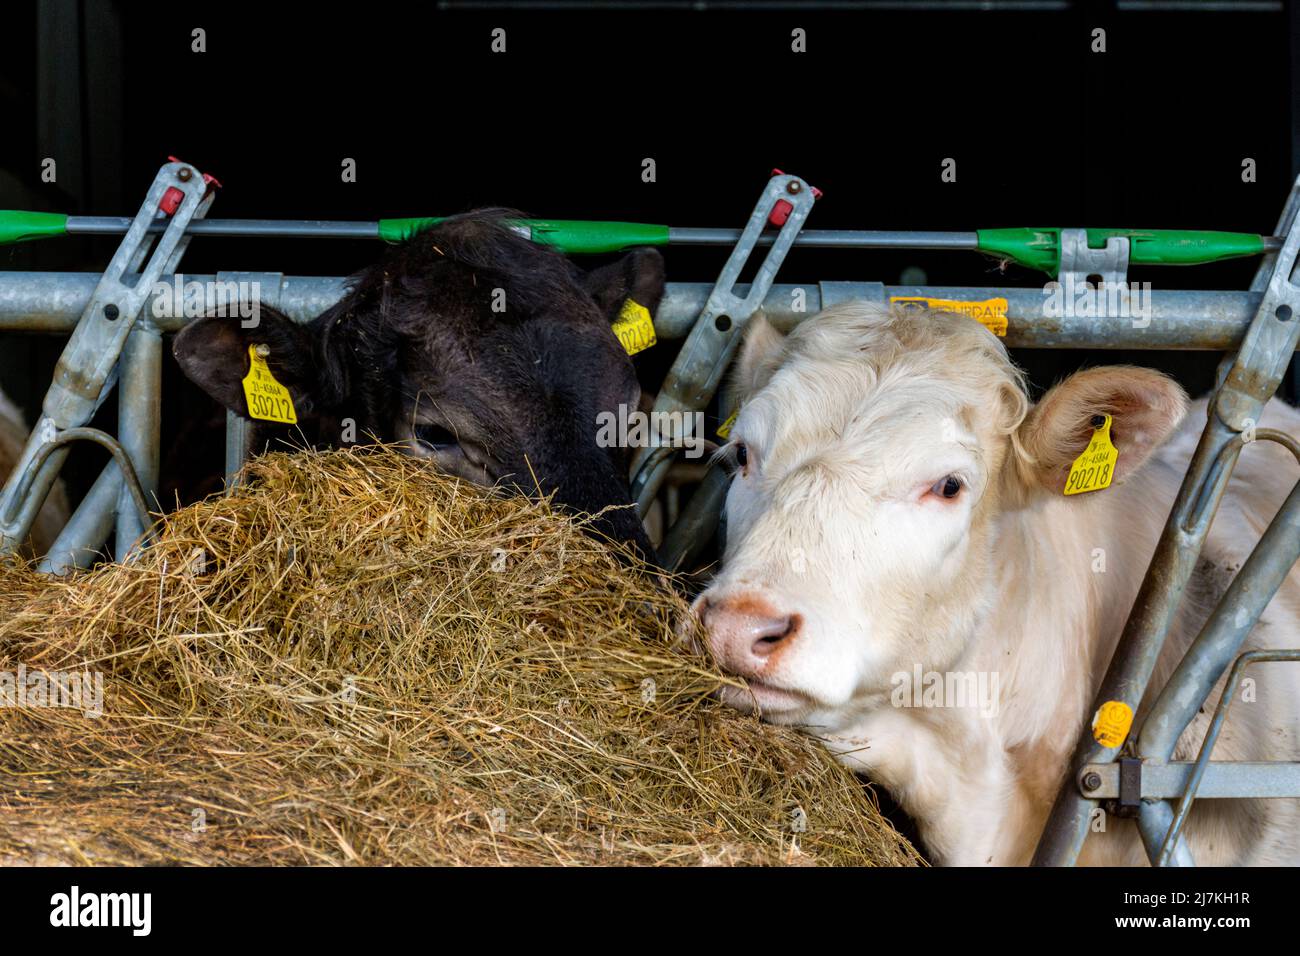 El ganado vacuno se alimenta de pasto ensilaje o heno en una granja del condado de Donegal, Irlanda Foto de stock